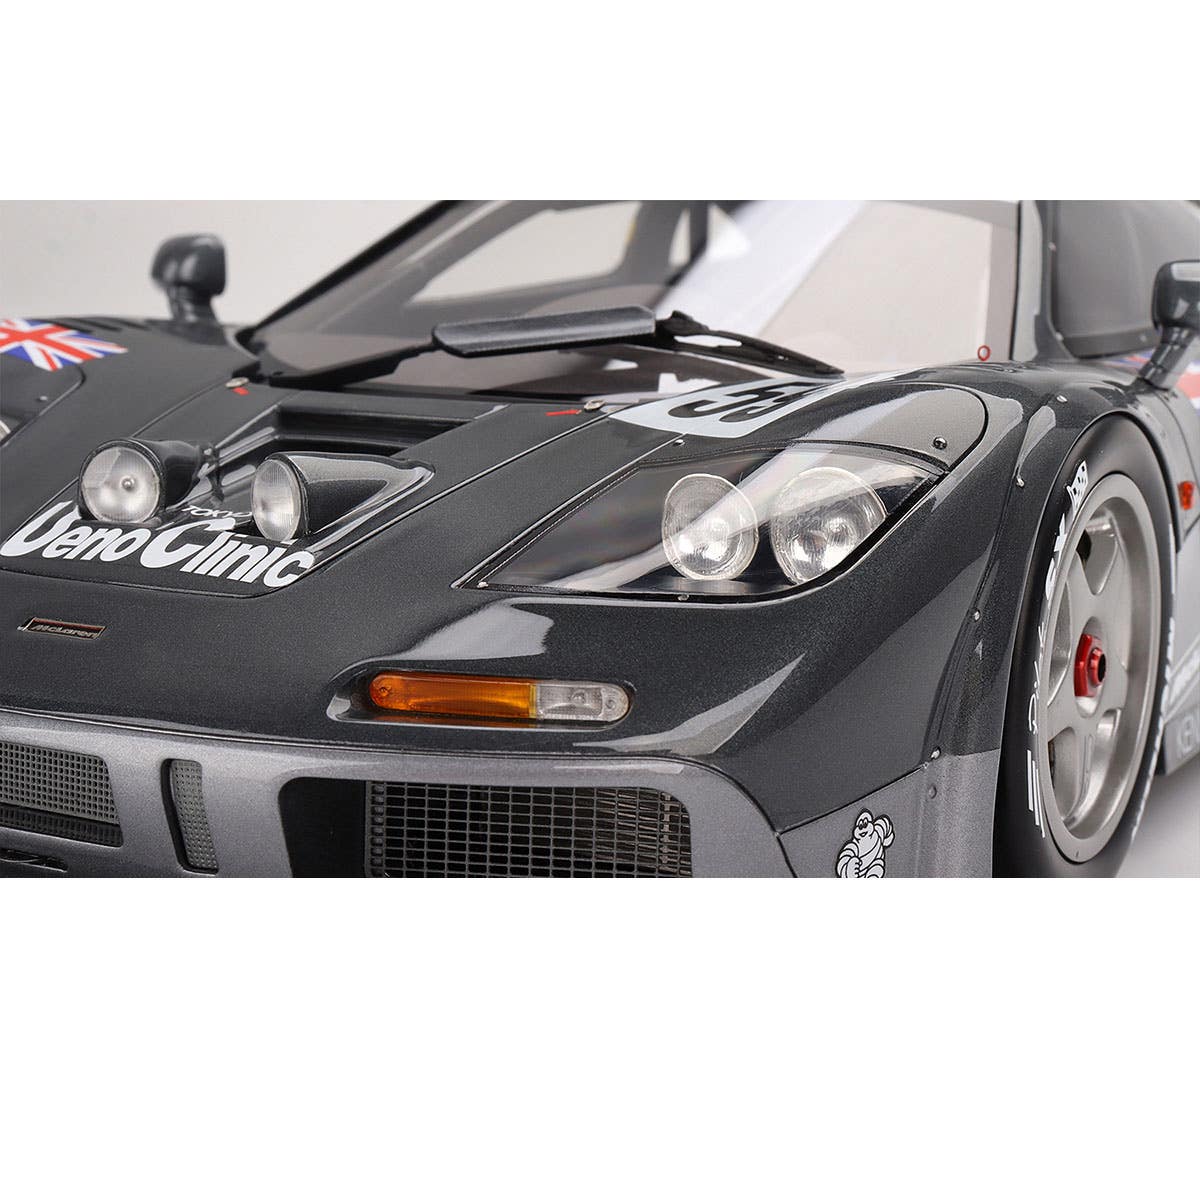 McLaren F1 GTR #59 1995 Le Mans 24 Hrs Winner - 1:12 Scale Resin Model Car